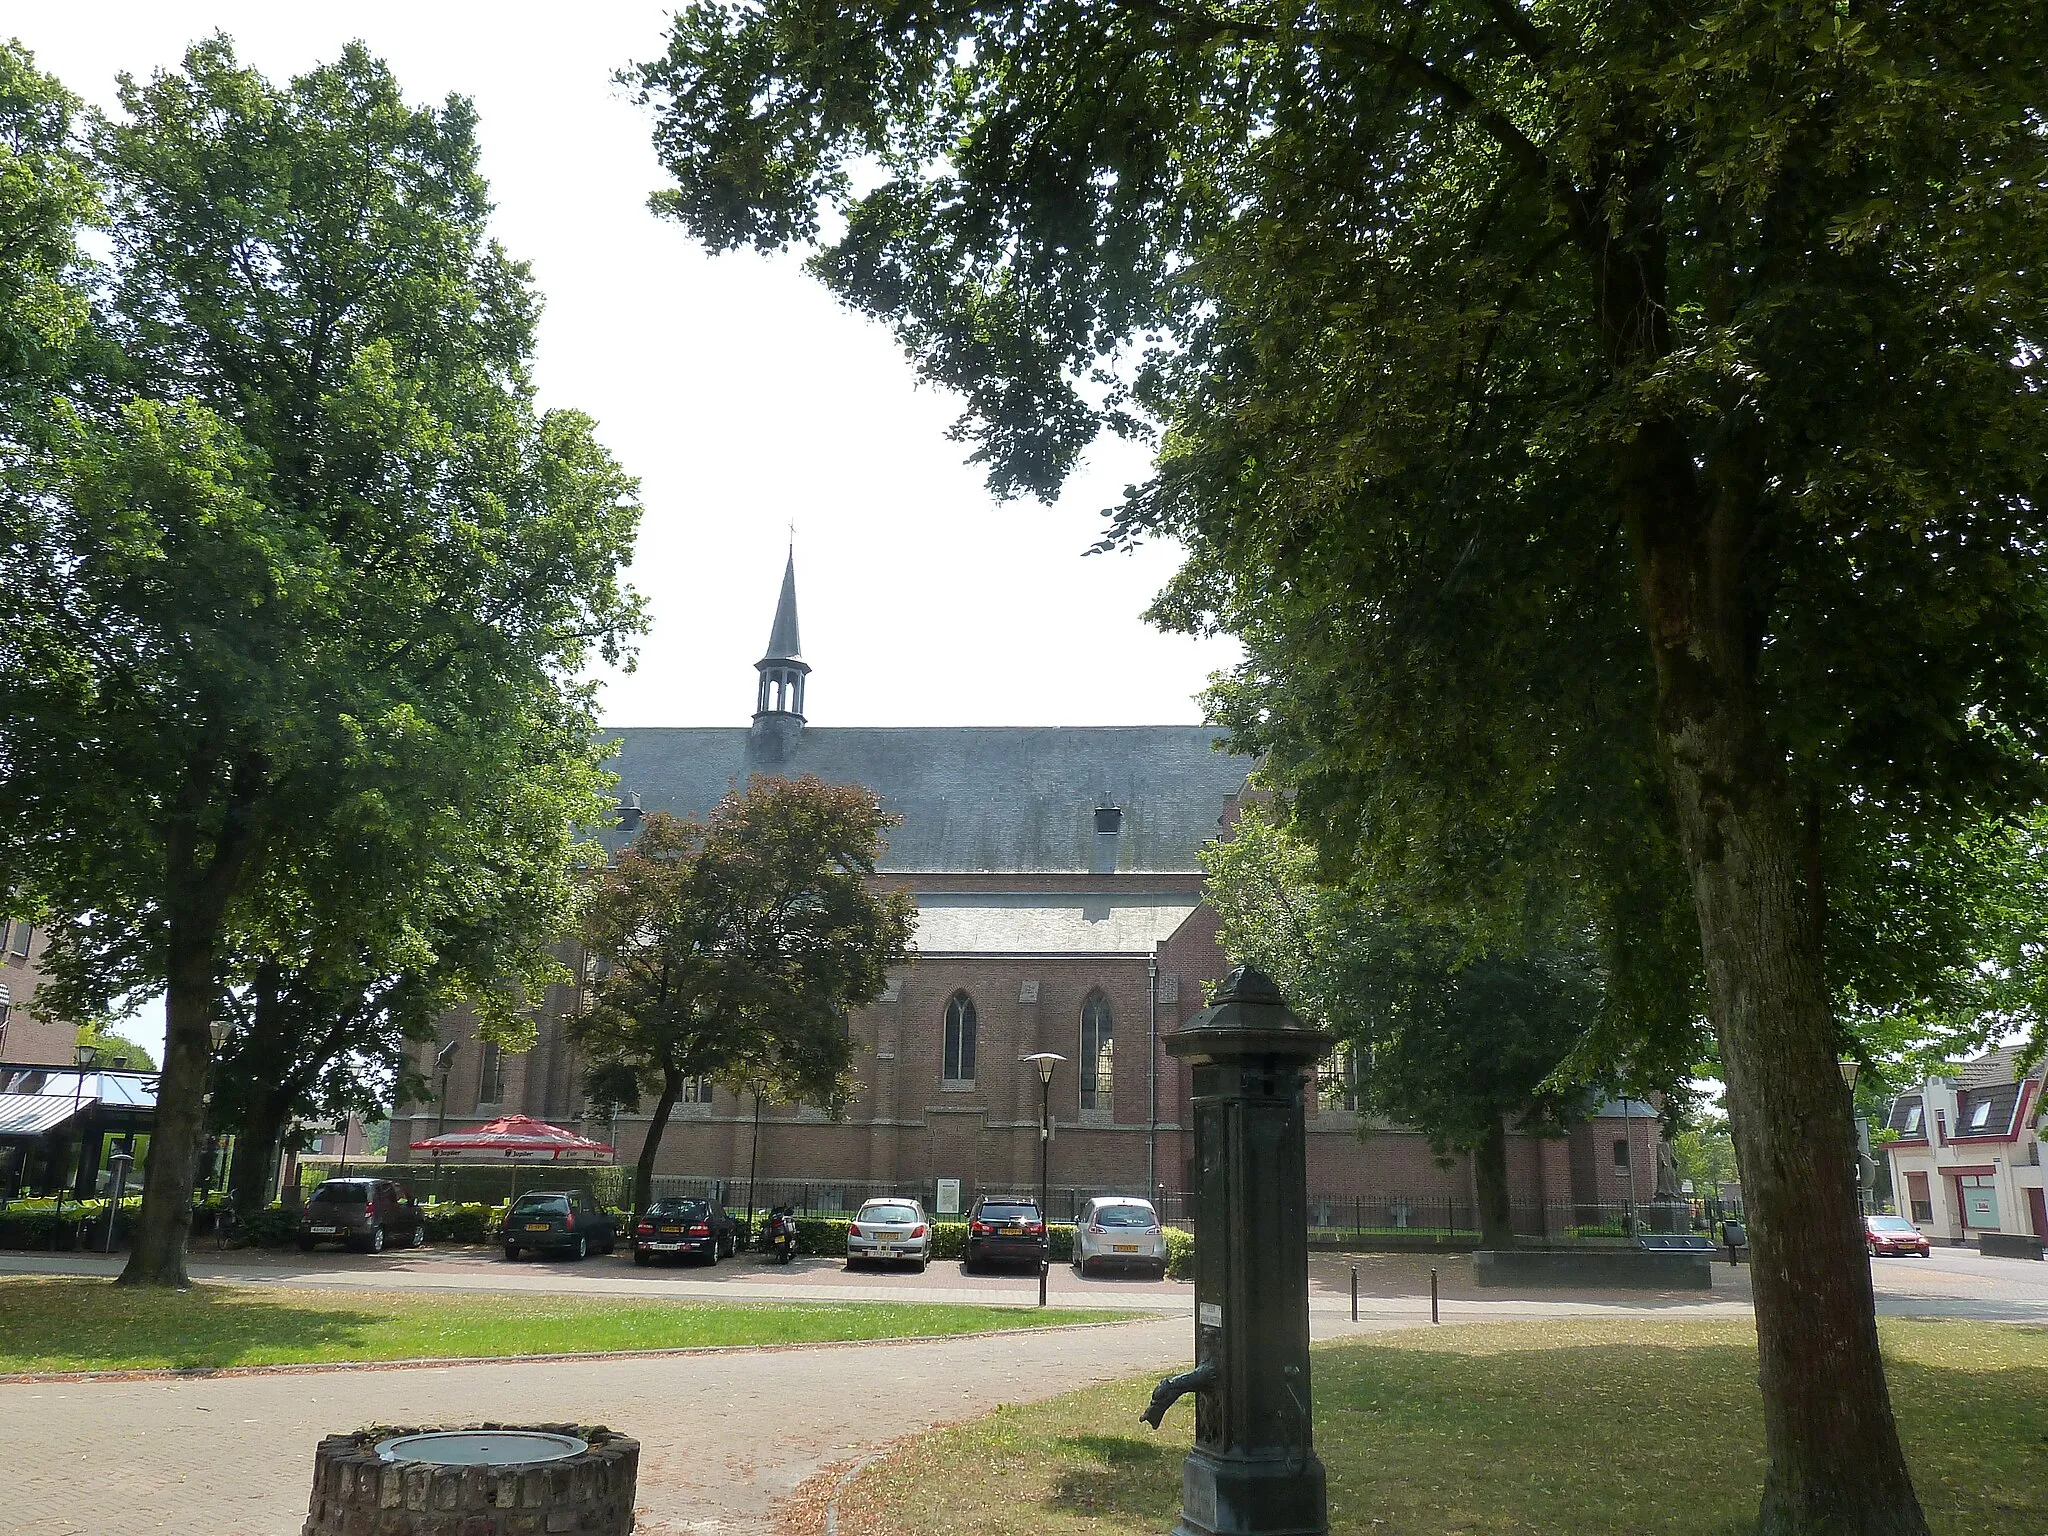 Bild von Limburg (NL)